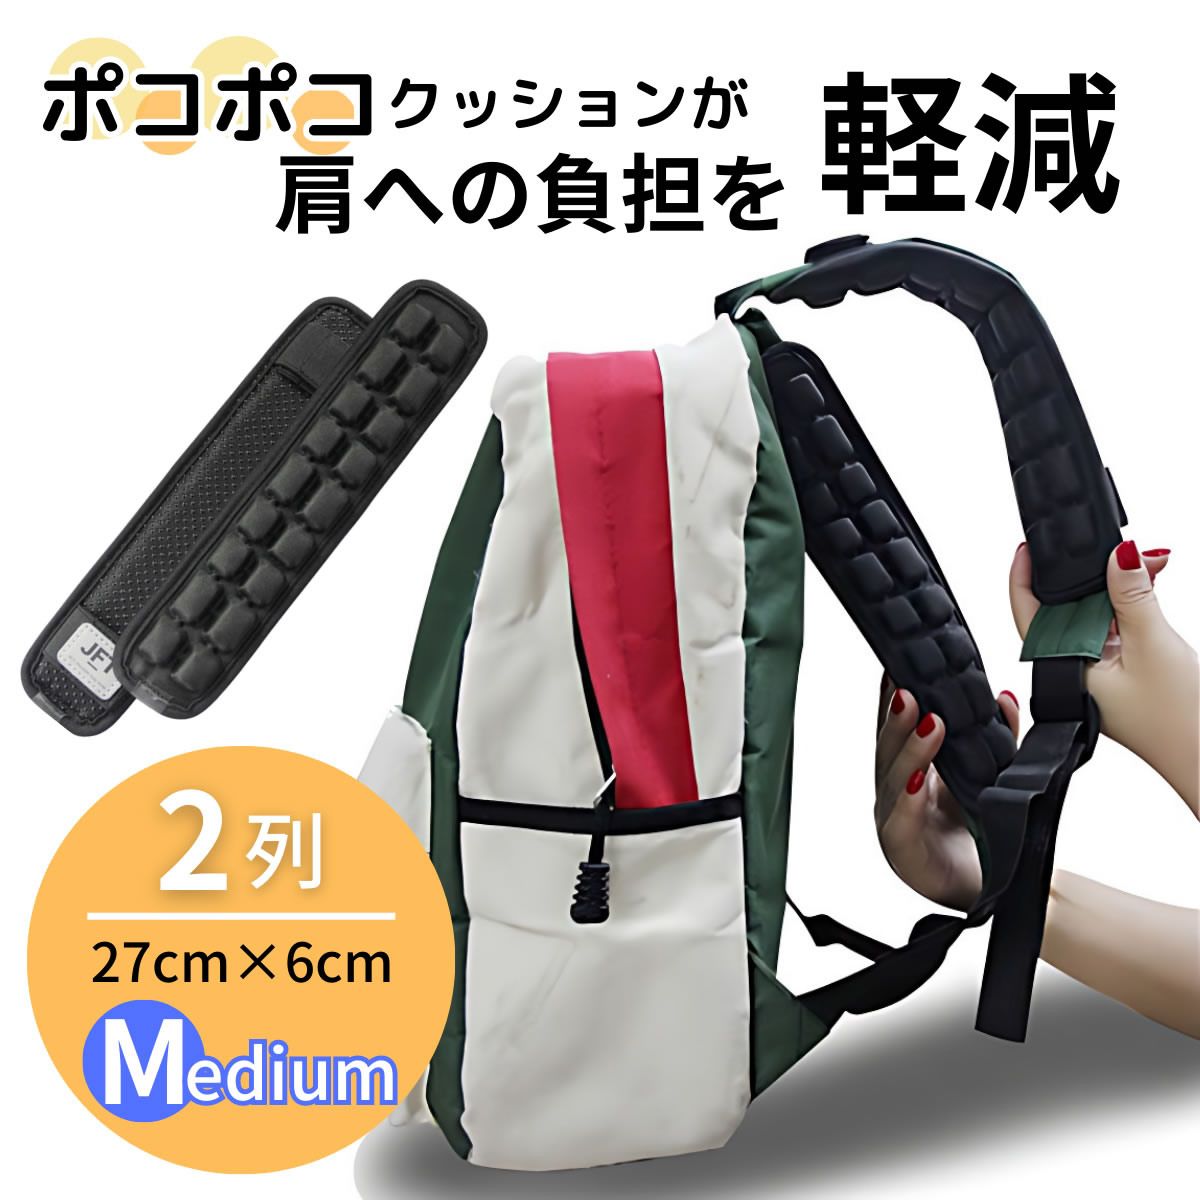 JFT. -слойный сила плечо накладка [ классификация 1 ранг приобритение ] плечо ремешок плечо накладка плечо ..3D цельный накладка . давление накладка ранец рюкзак сумка упаковка 